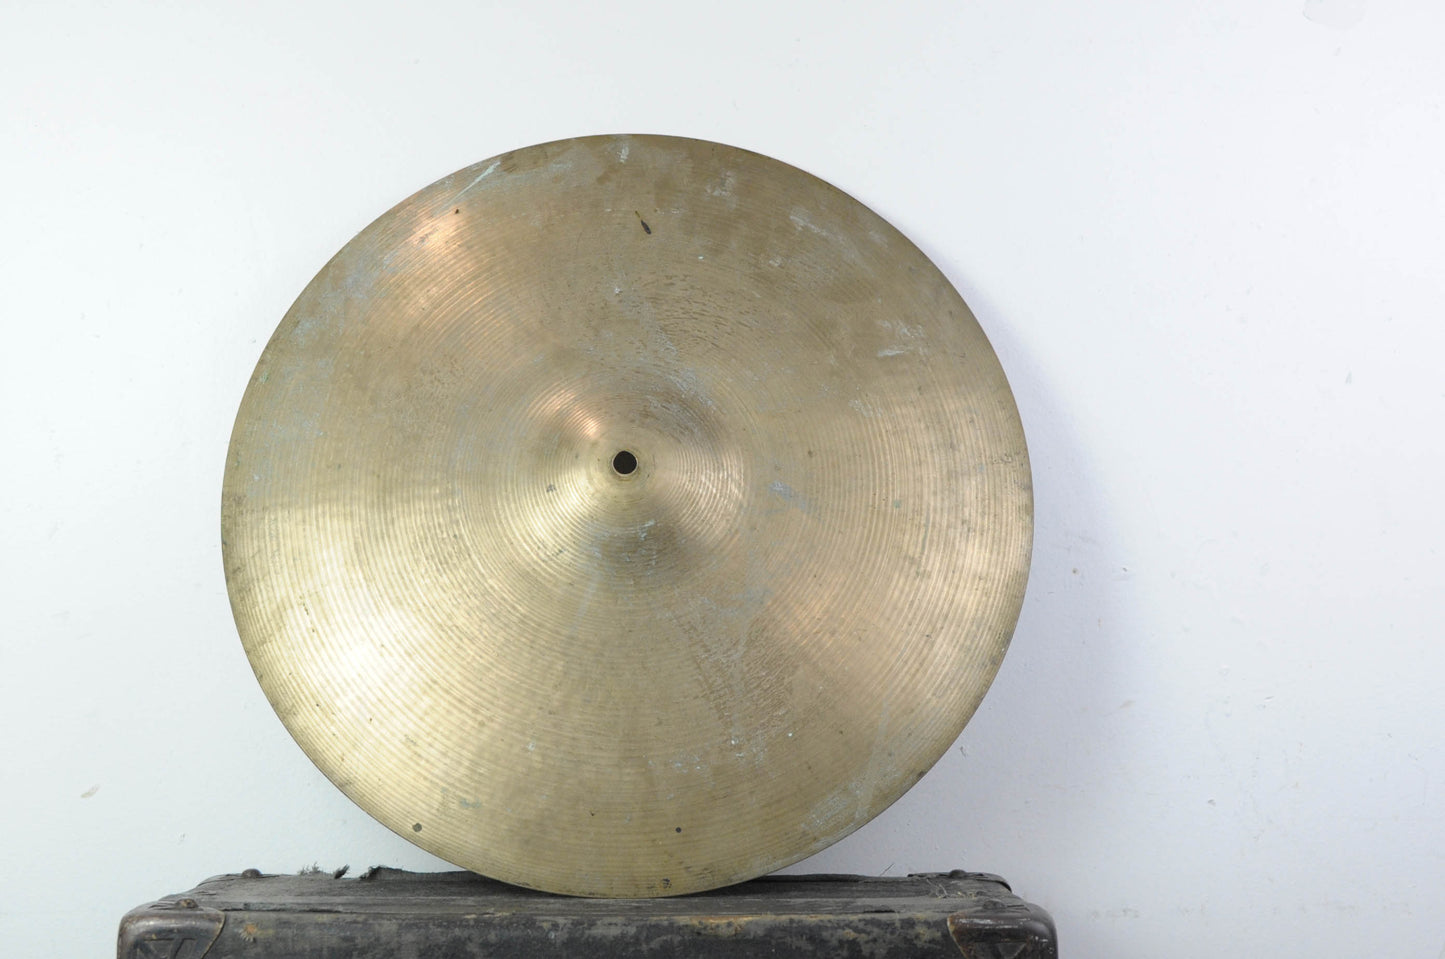 1970s Zildjian A 18" Crash Cymbal 1614g